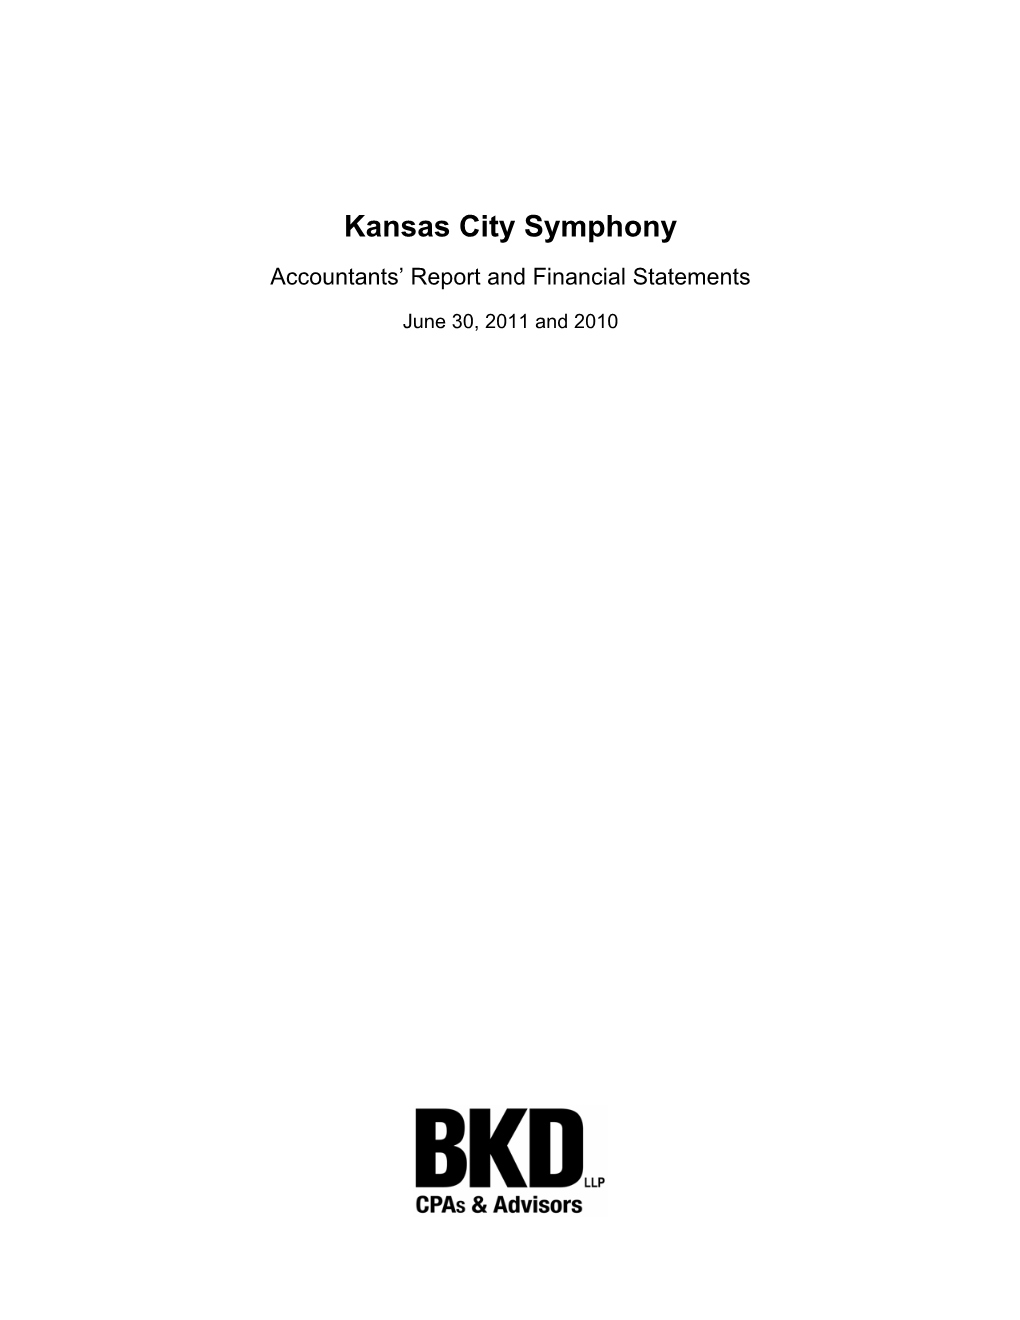 Kansas City Symphony Audit